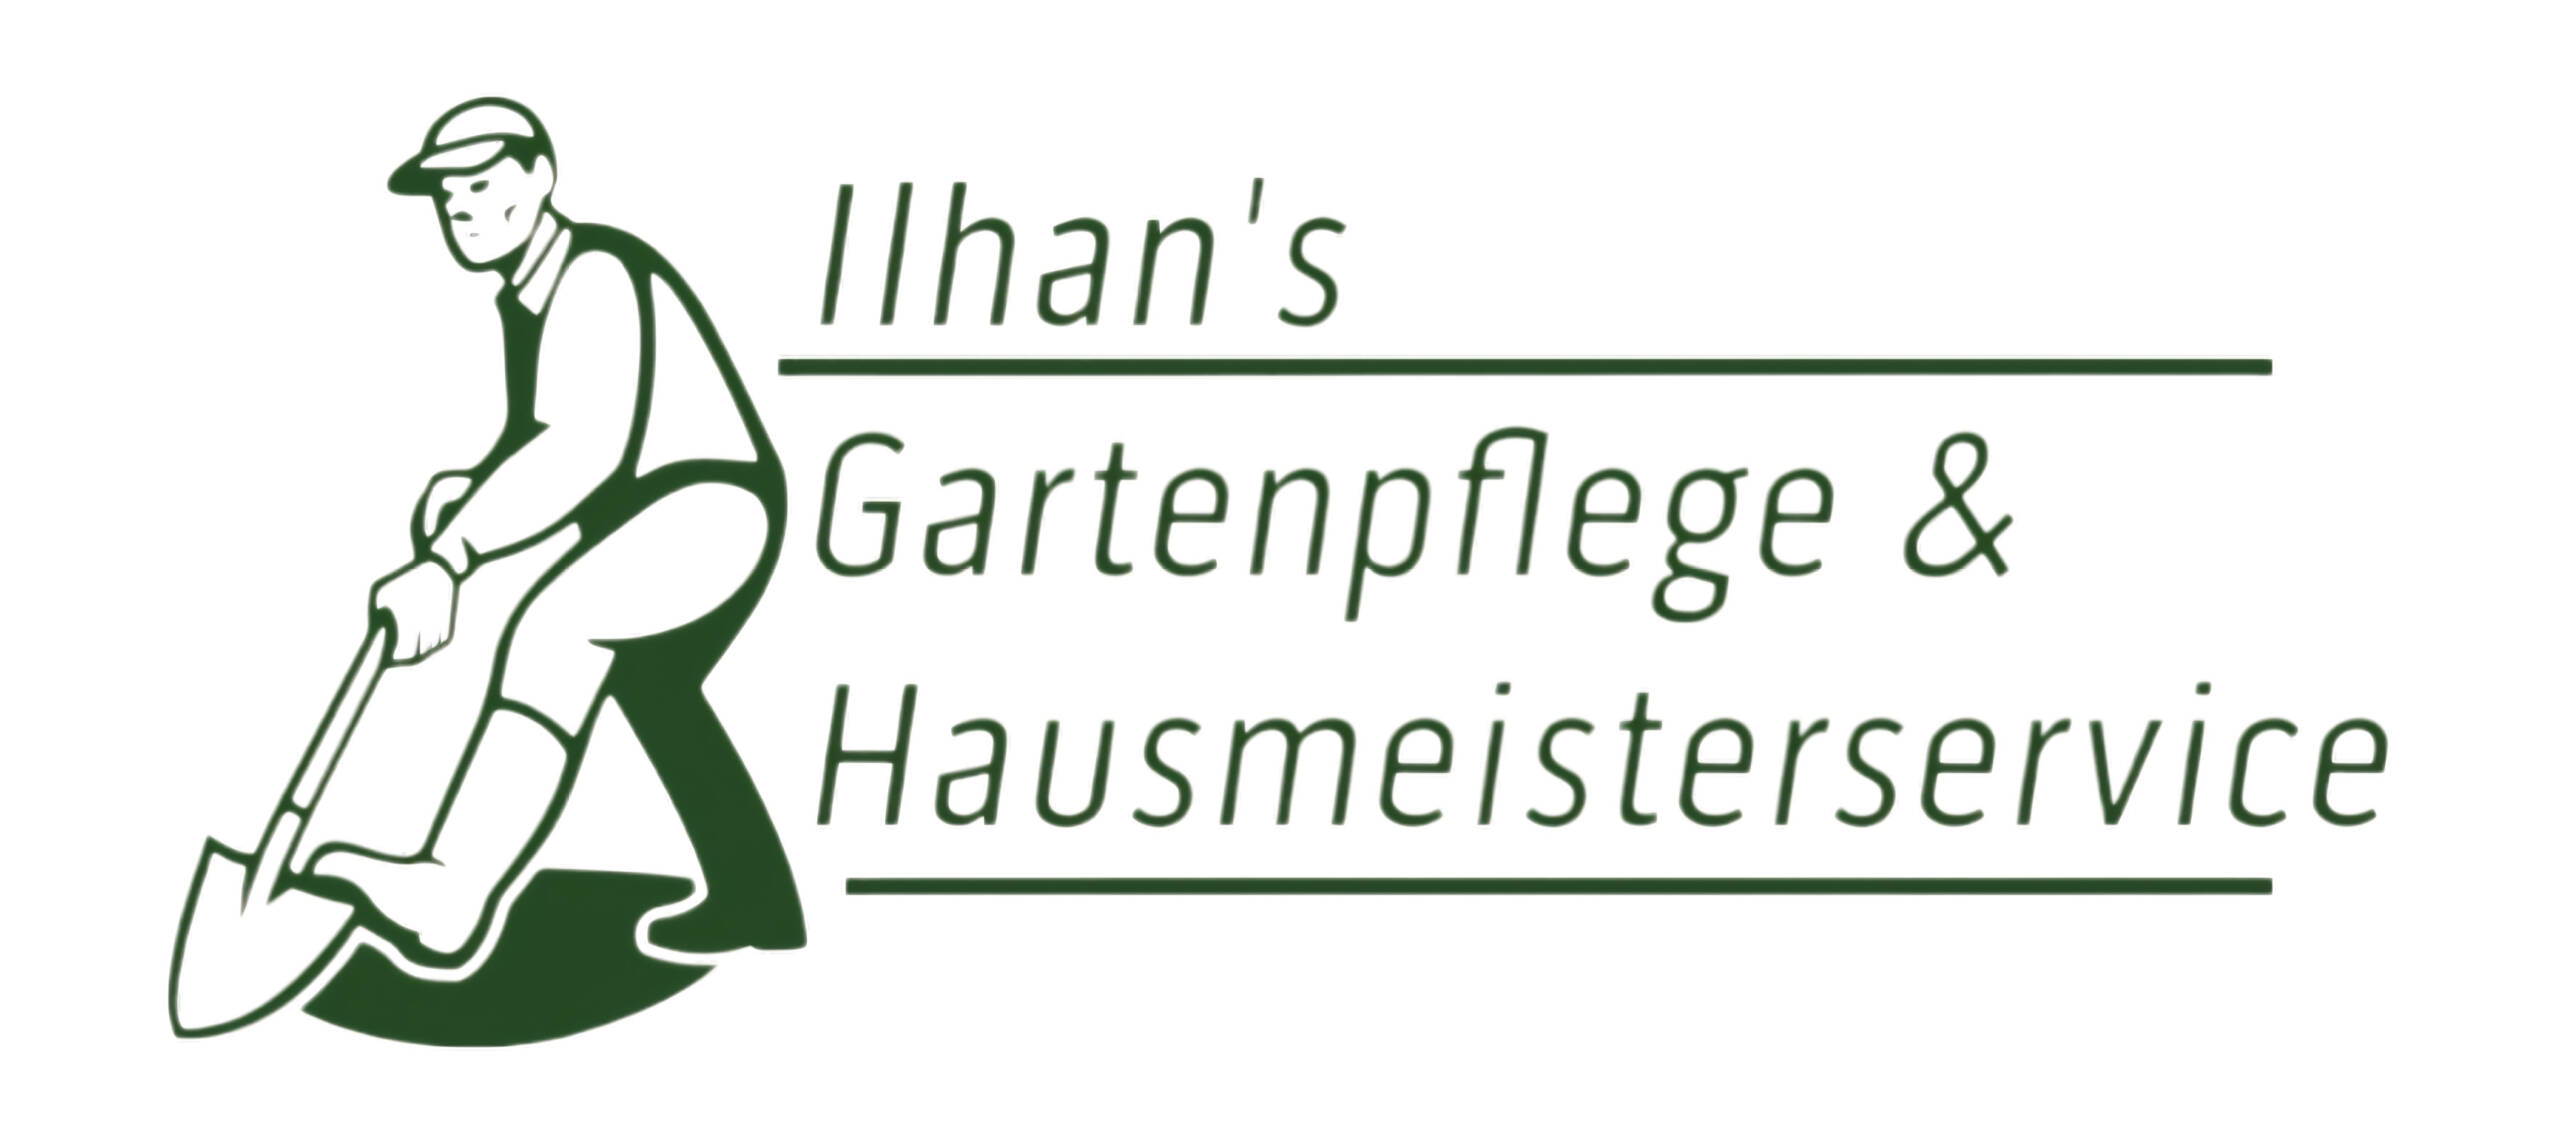 Ilhan's Gartenpflege & Hausmeisterservice